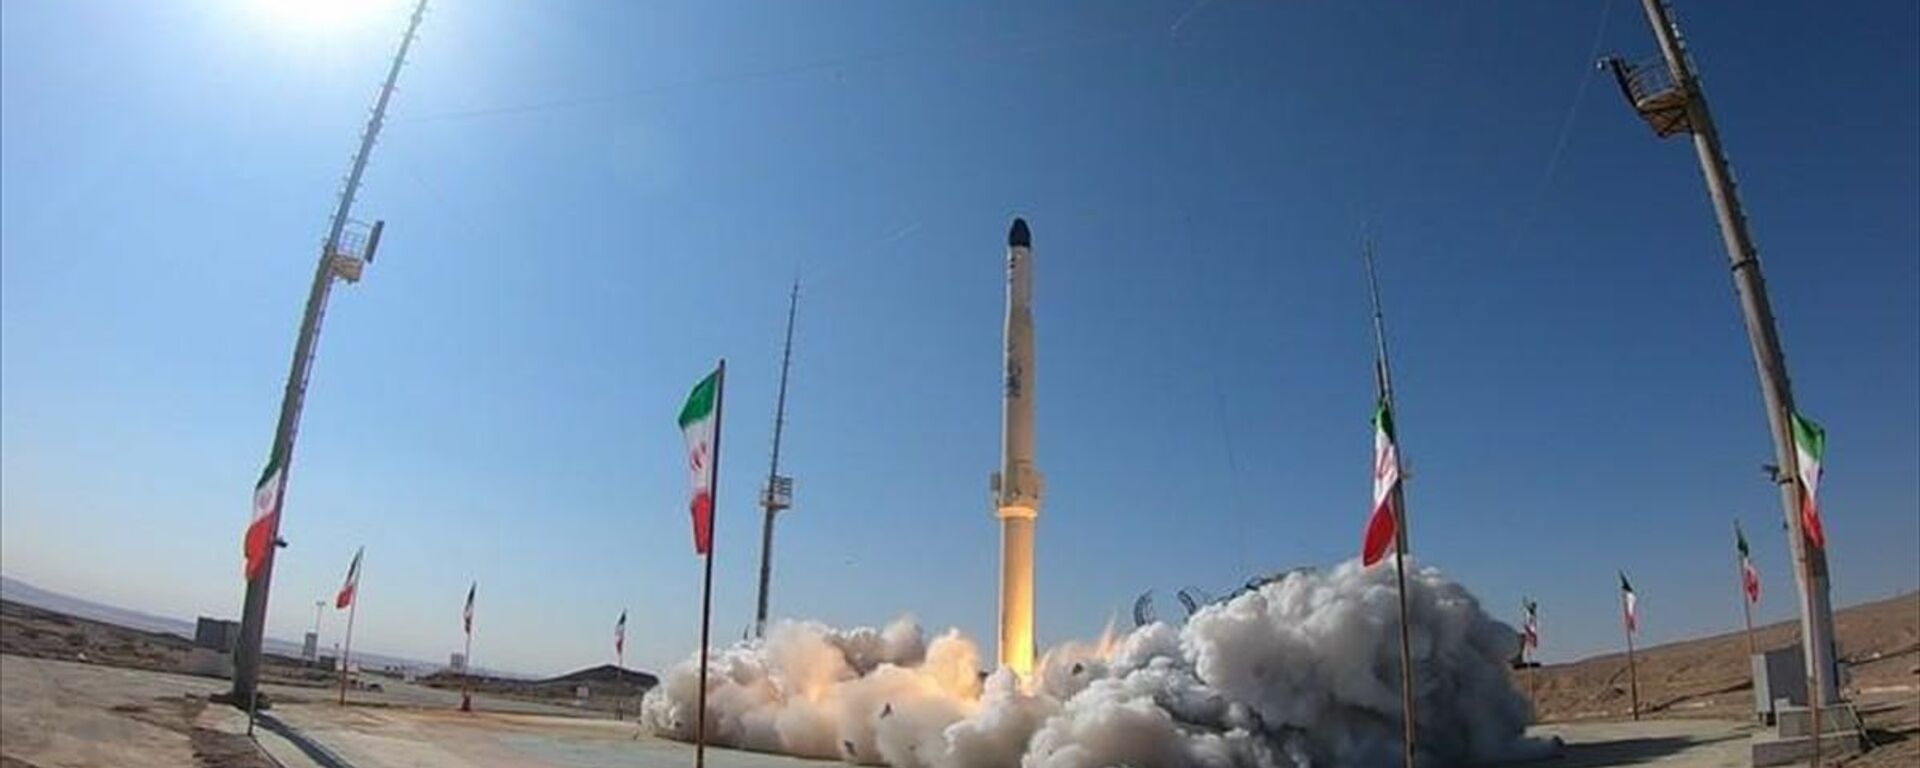 İran Zülcenah adını verdiği ve katı ile sıvı yakıtla çalışabilen motora sahip yeni uydu taşıyıcısını test etti. - Sputnik Türkiye, 1920, 01.02.2021